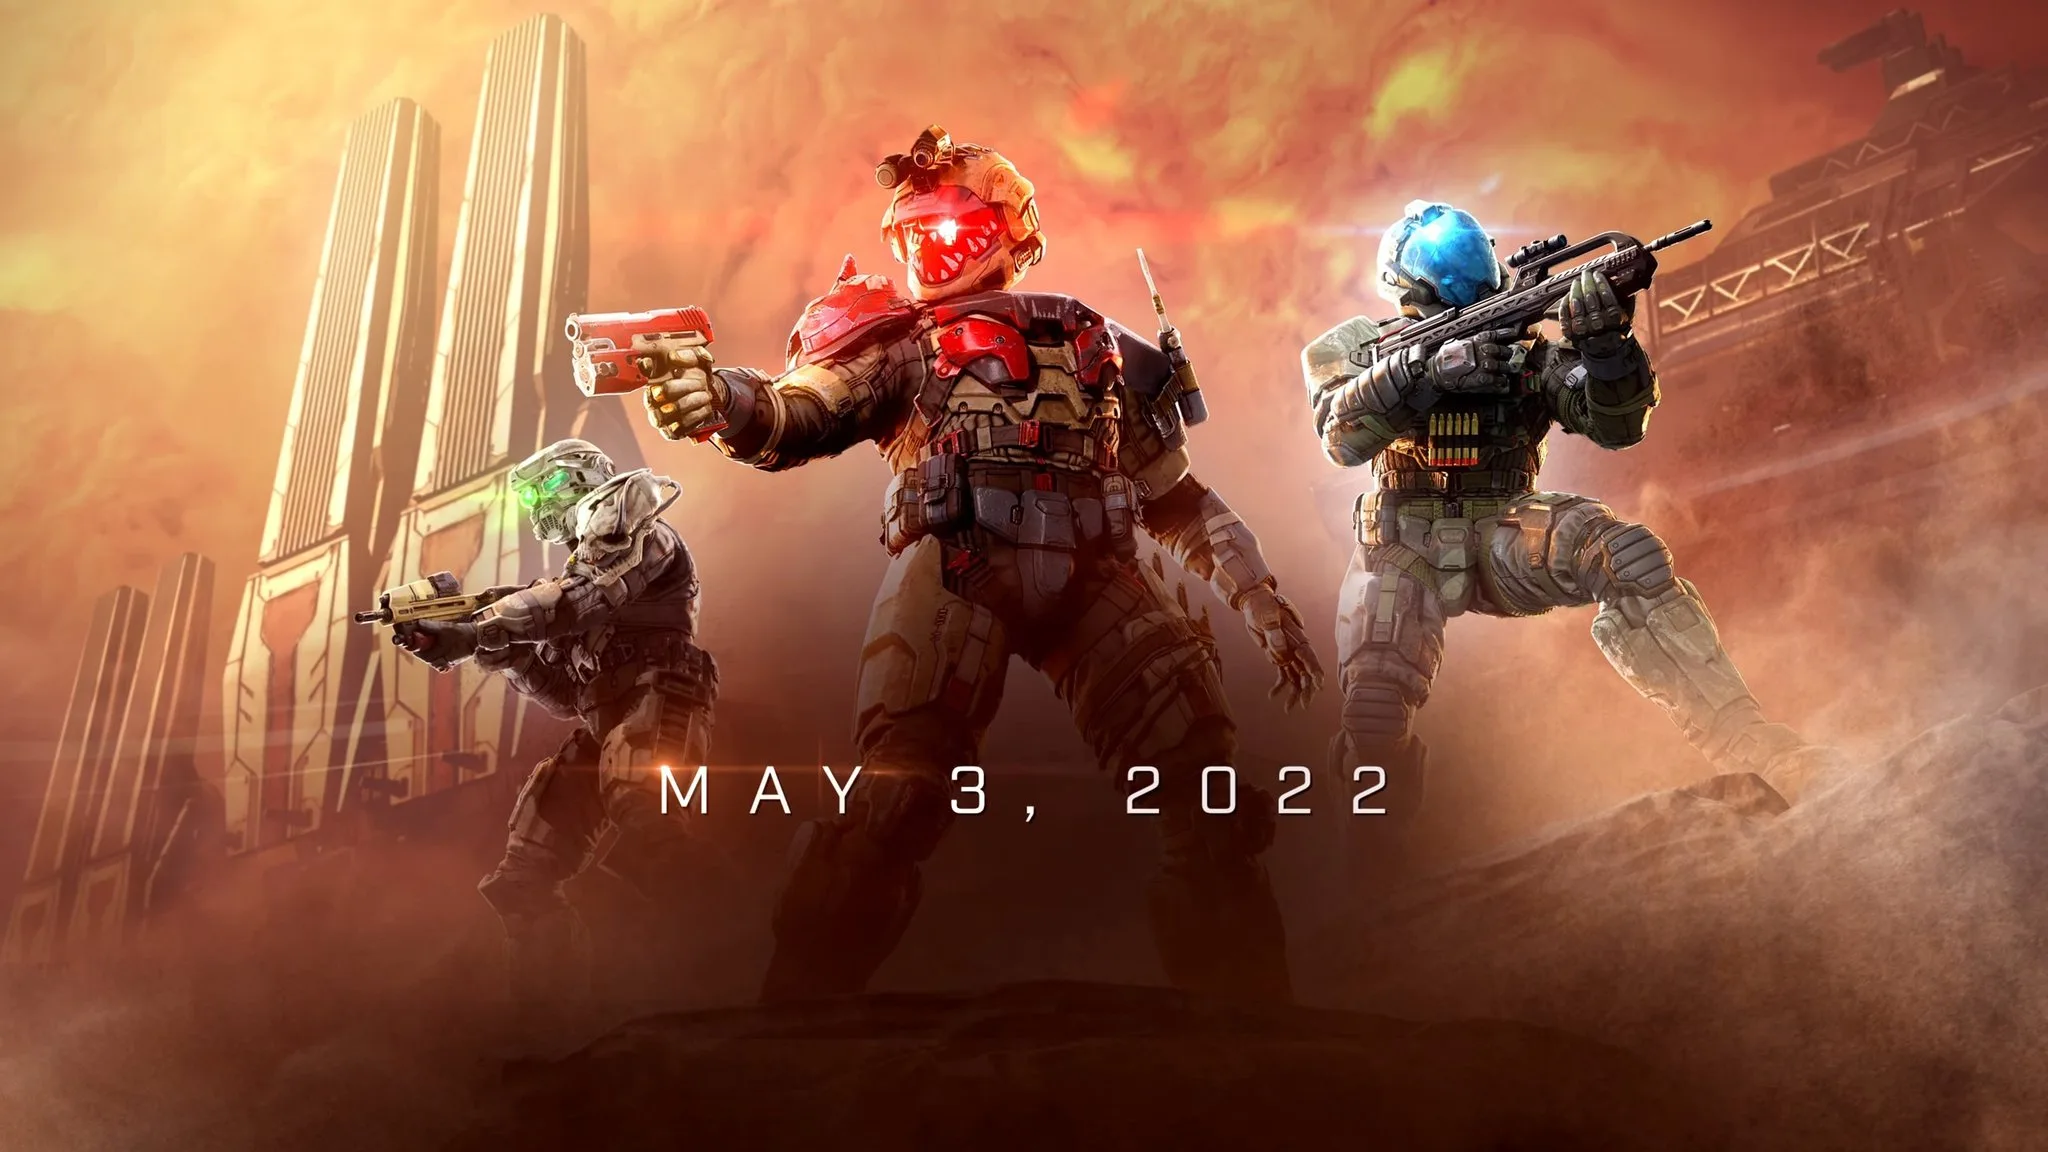 واخيرا الإعلان عن الموسم الثاني للعبة Halo Infinite